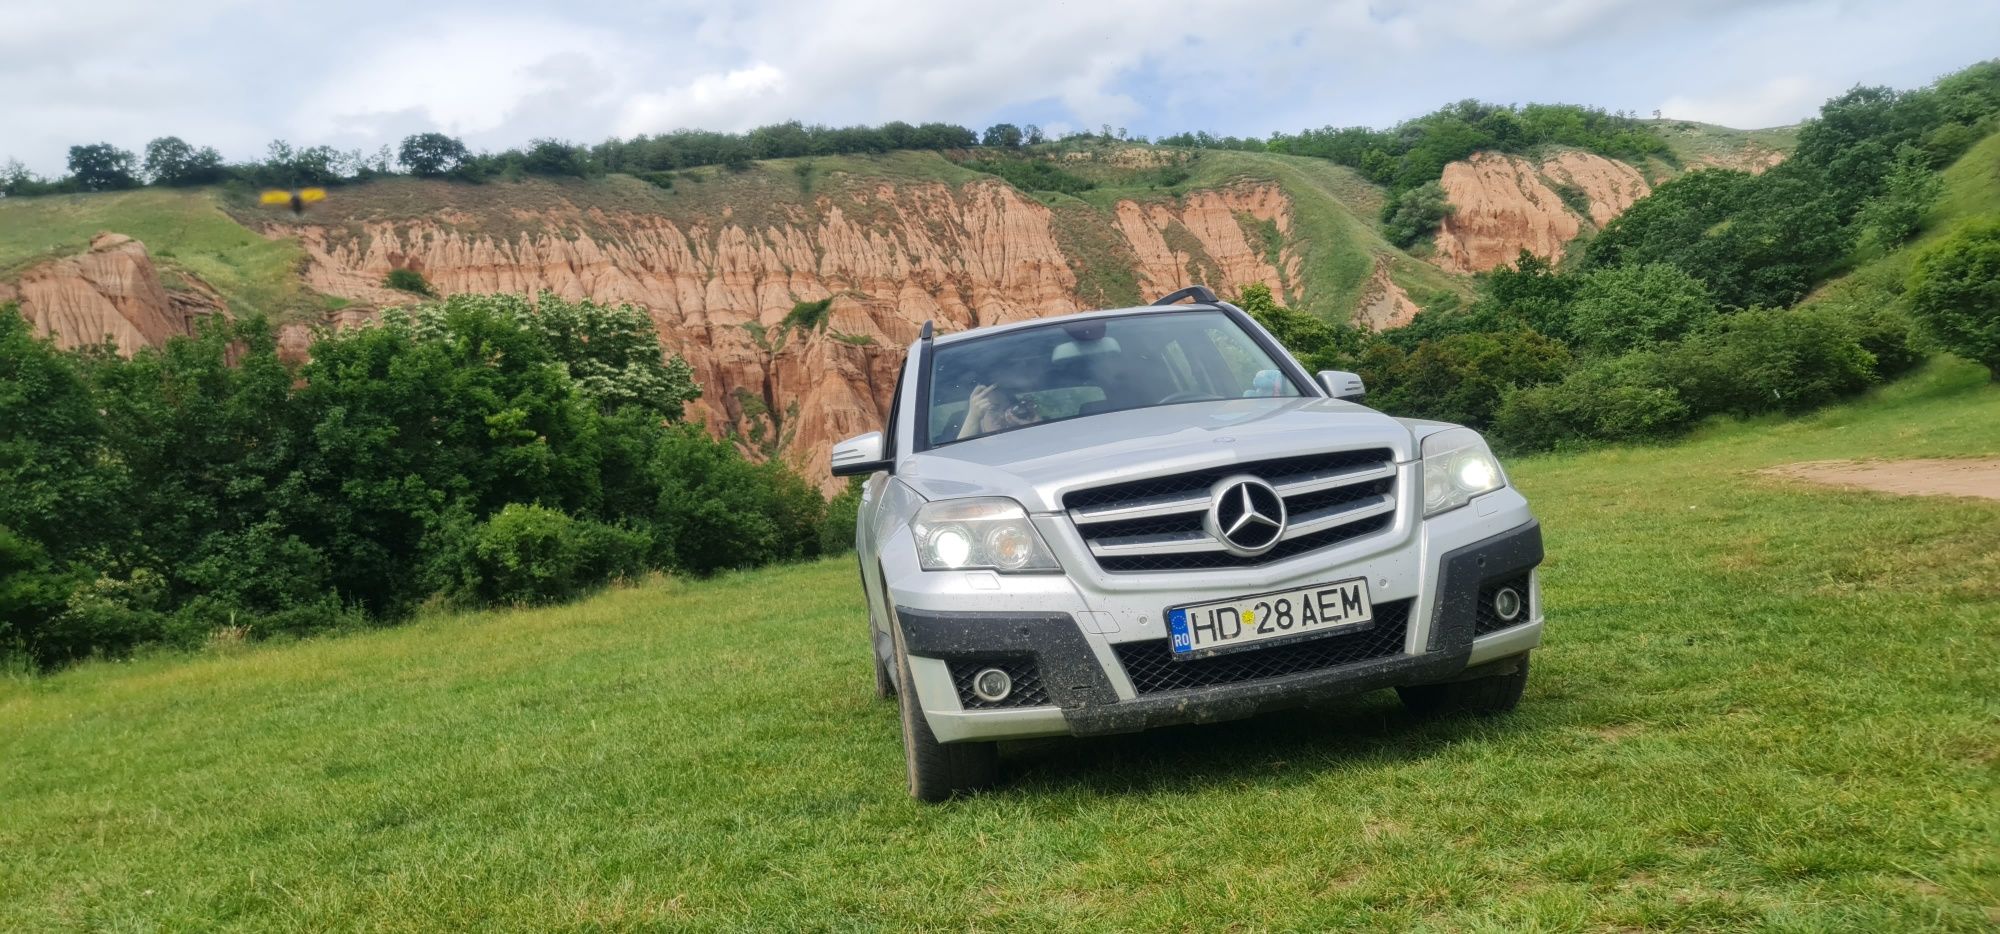 Vând Mercedes-Benz Glk 2.2 2009 4matic . Preț 7800 euro negociabil